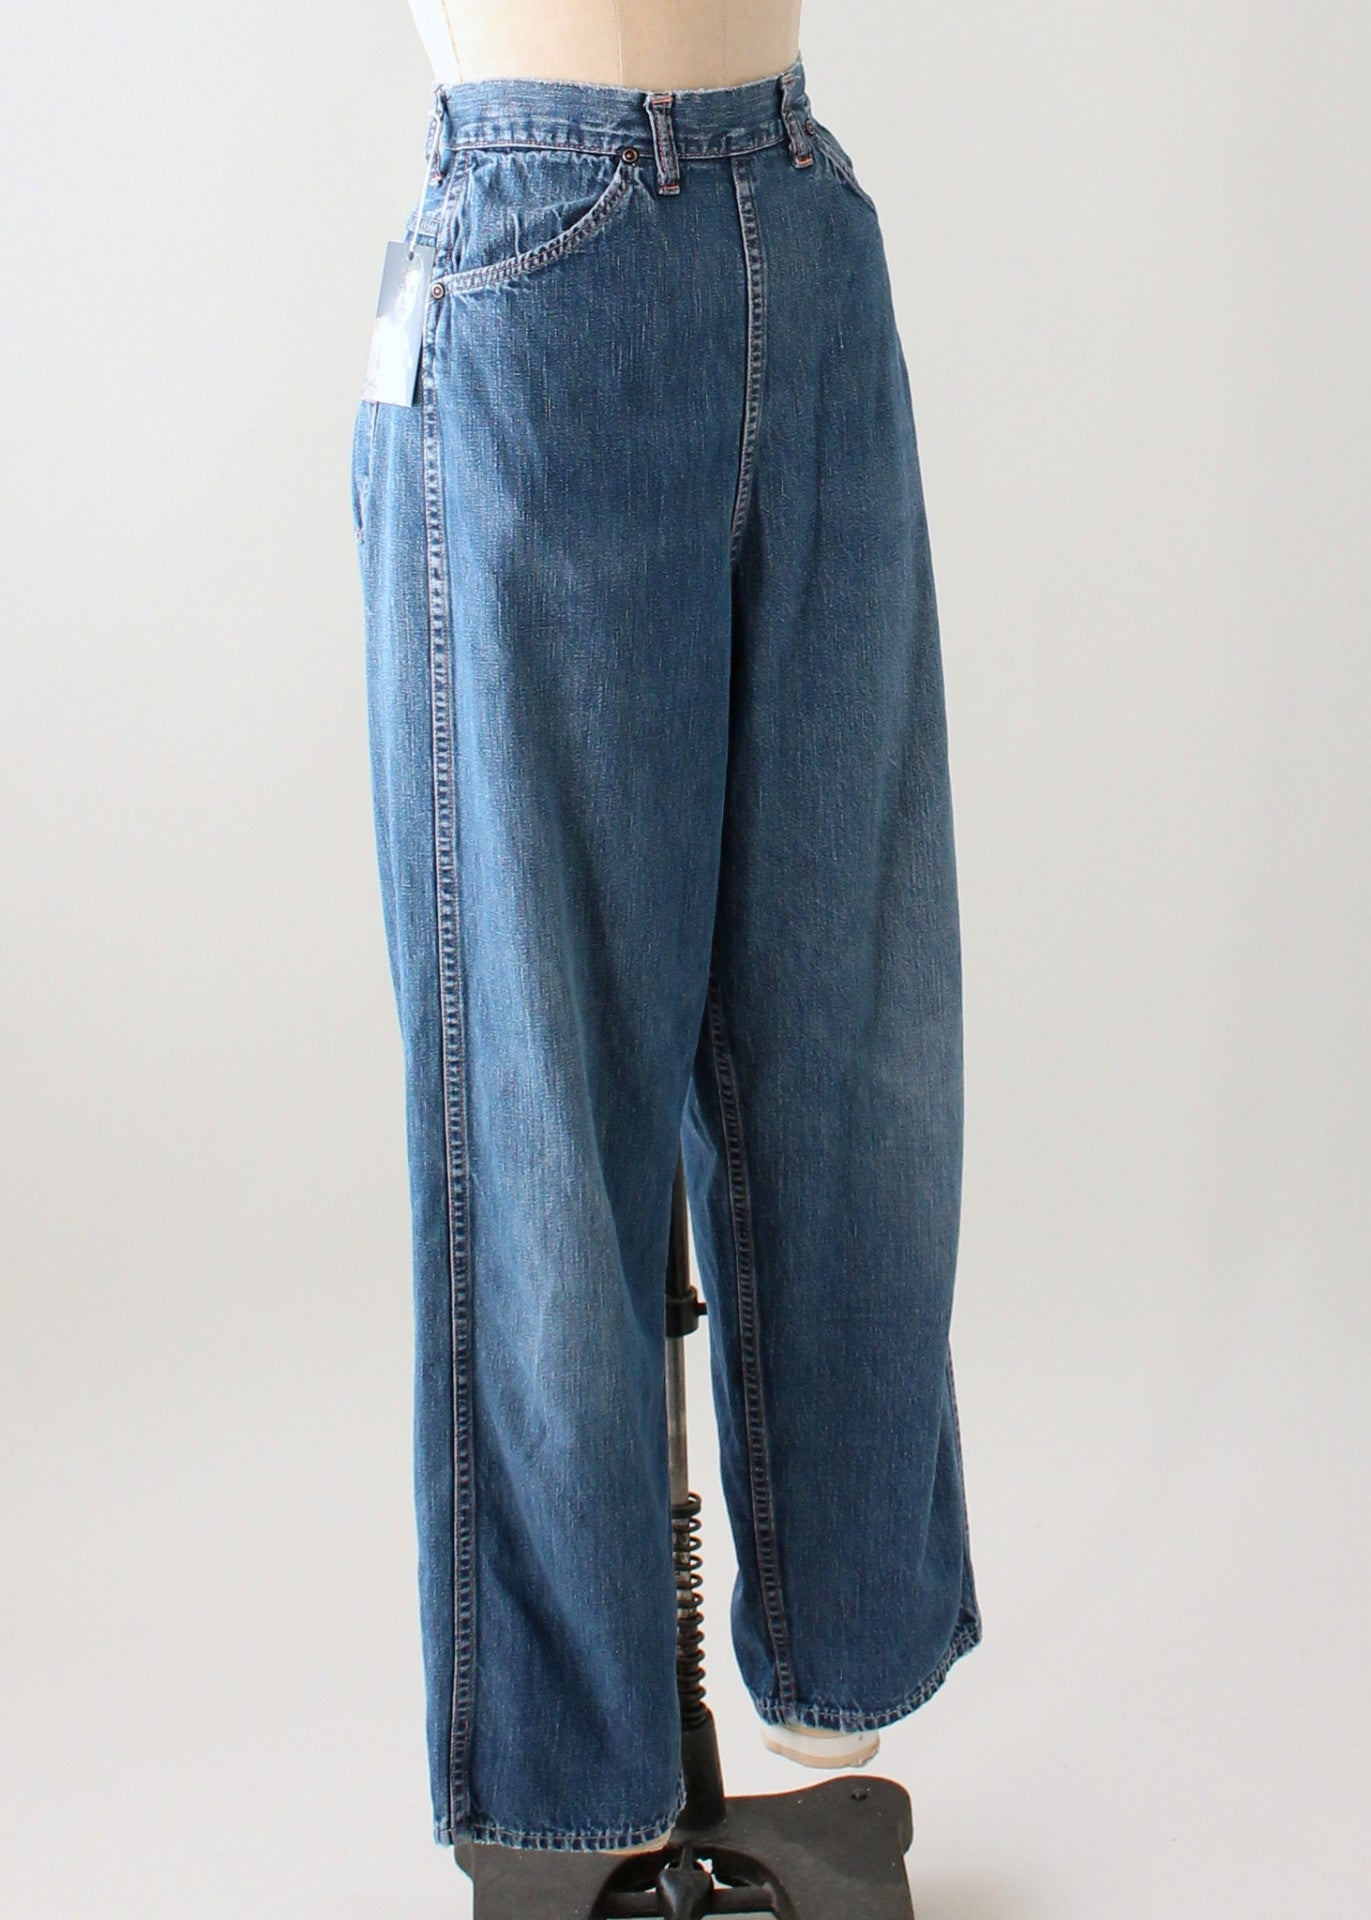 Vintage 1950s Distressed Denim Jeans - Raleigh Vintage